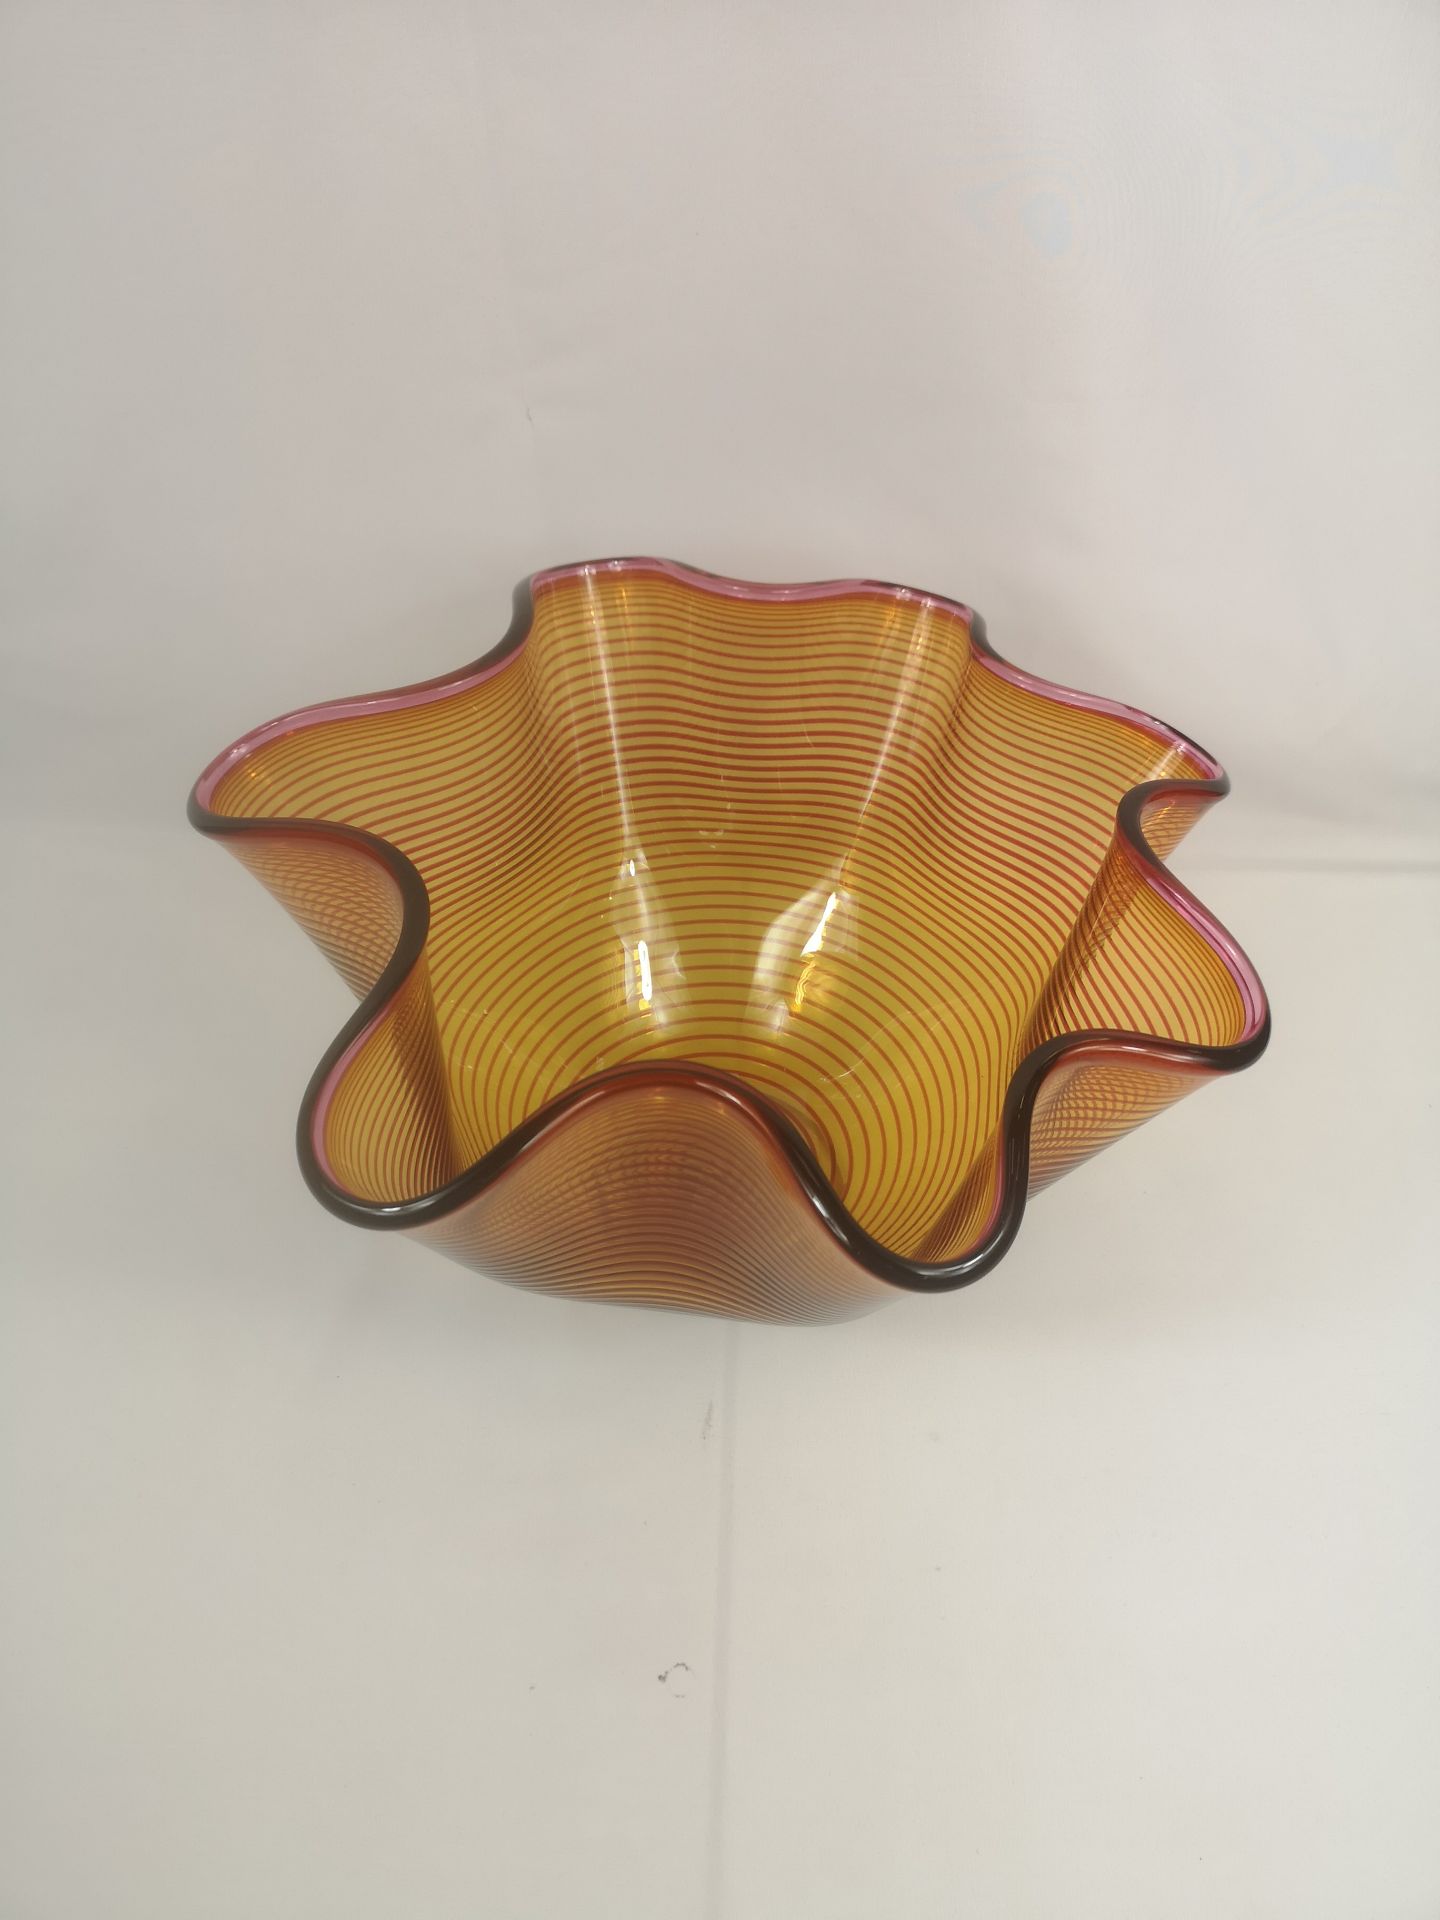 Orange glass vase by Bob Crooks - Image 2 of 4